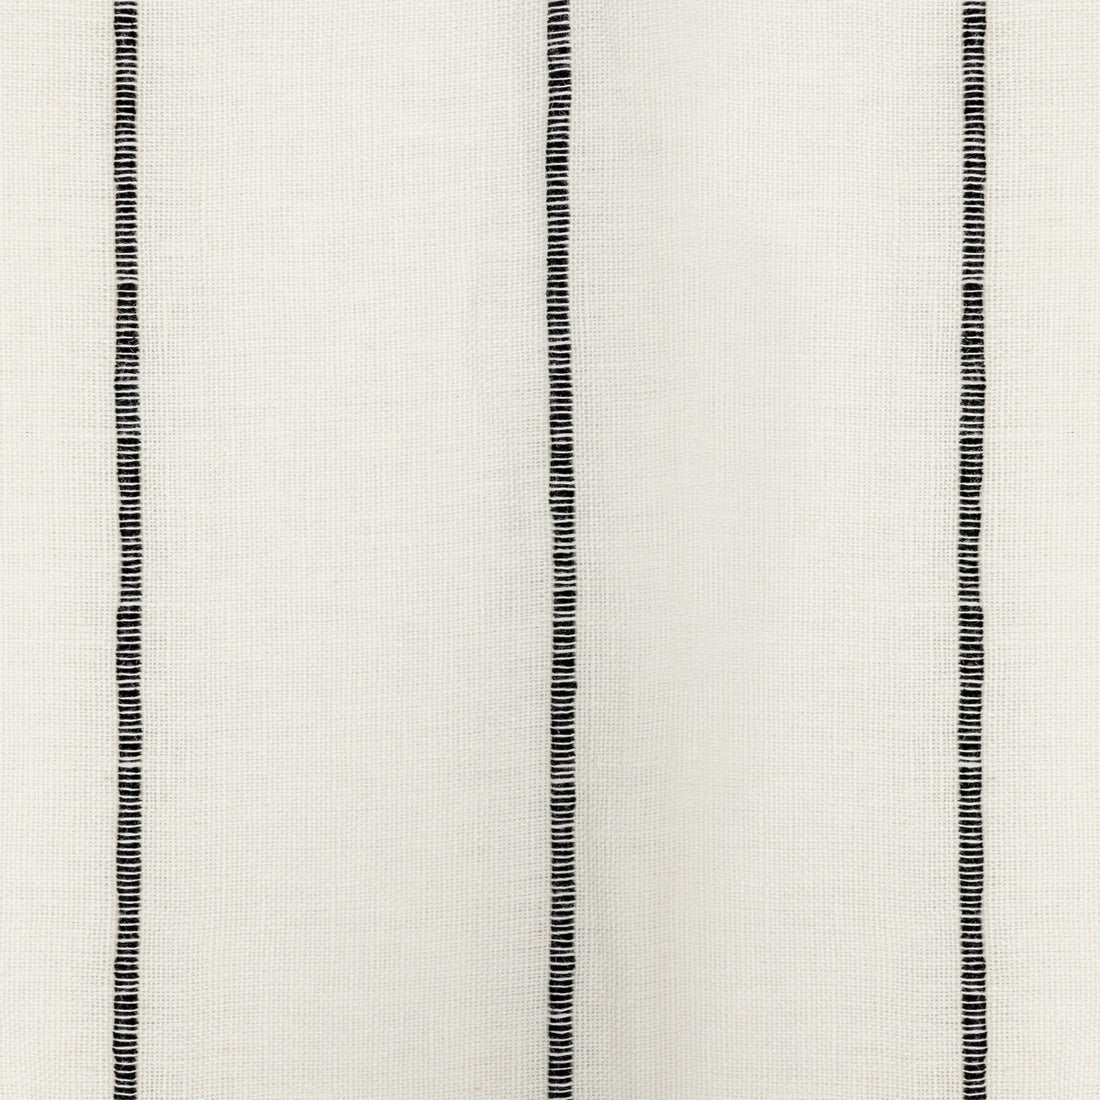 Kravet Design fabric in 4926-81 color - pattern 4926.81.0 - by Kravet Design